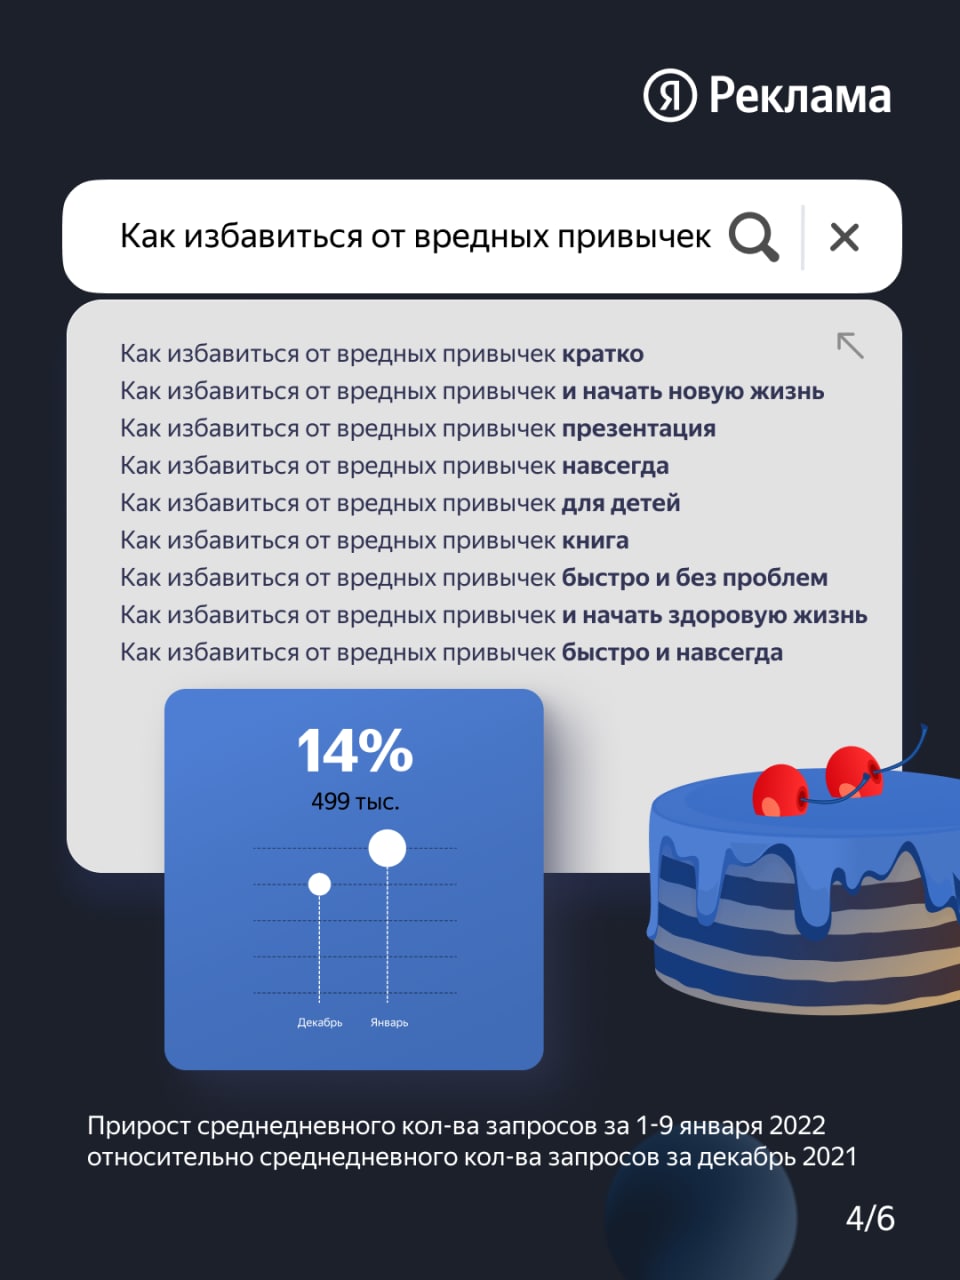 Яндекс: самые популярные запросы россиян в праздники